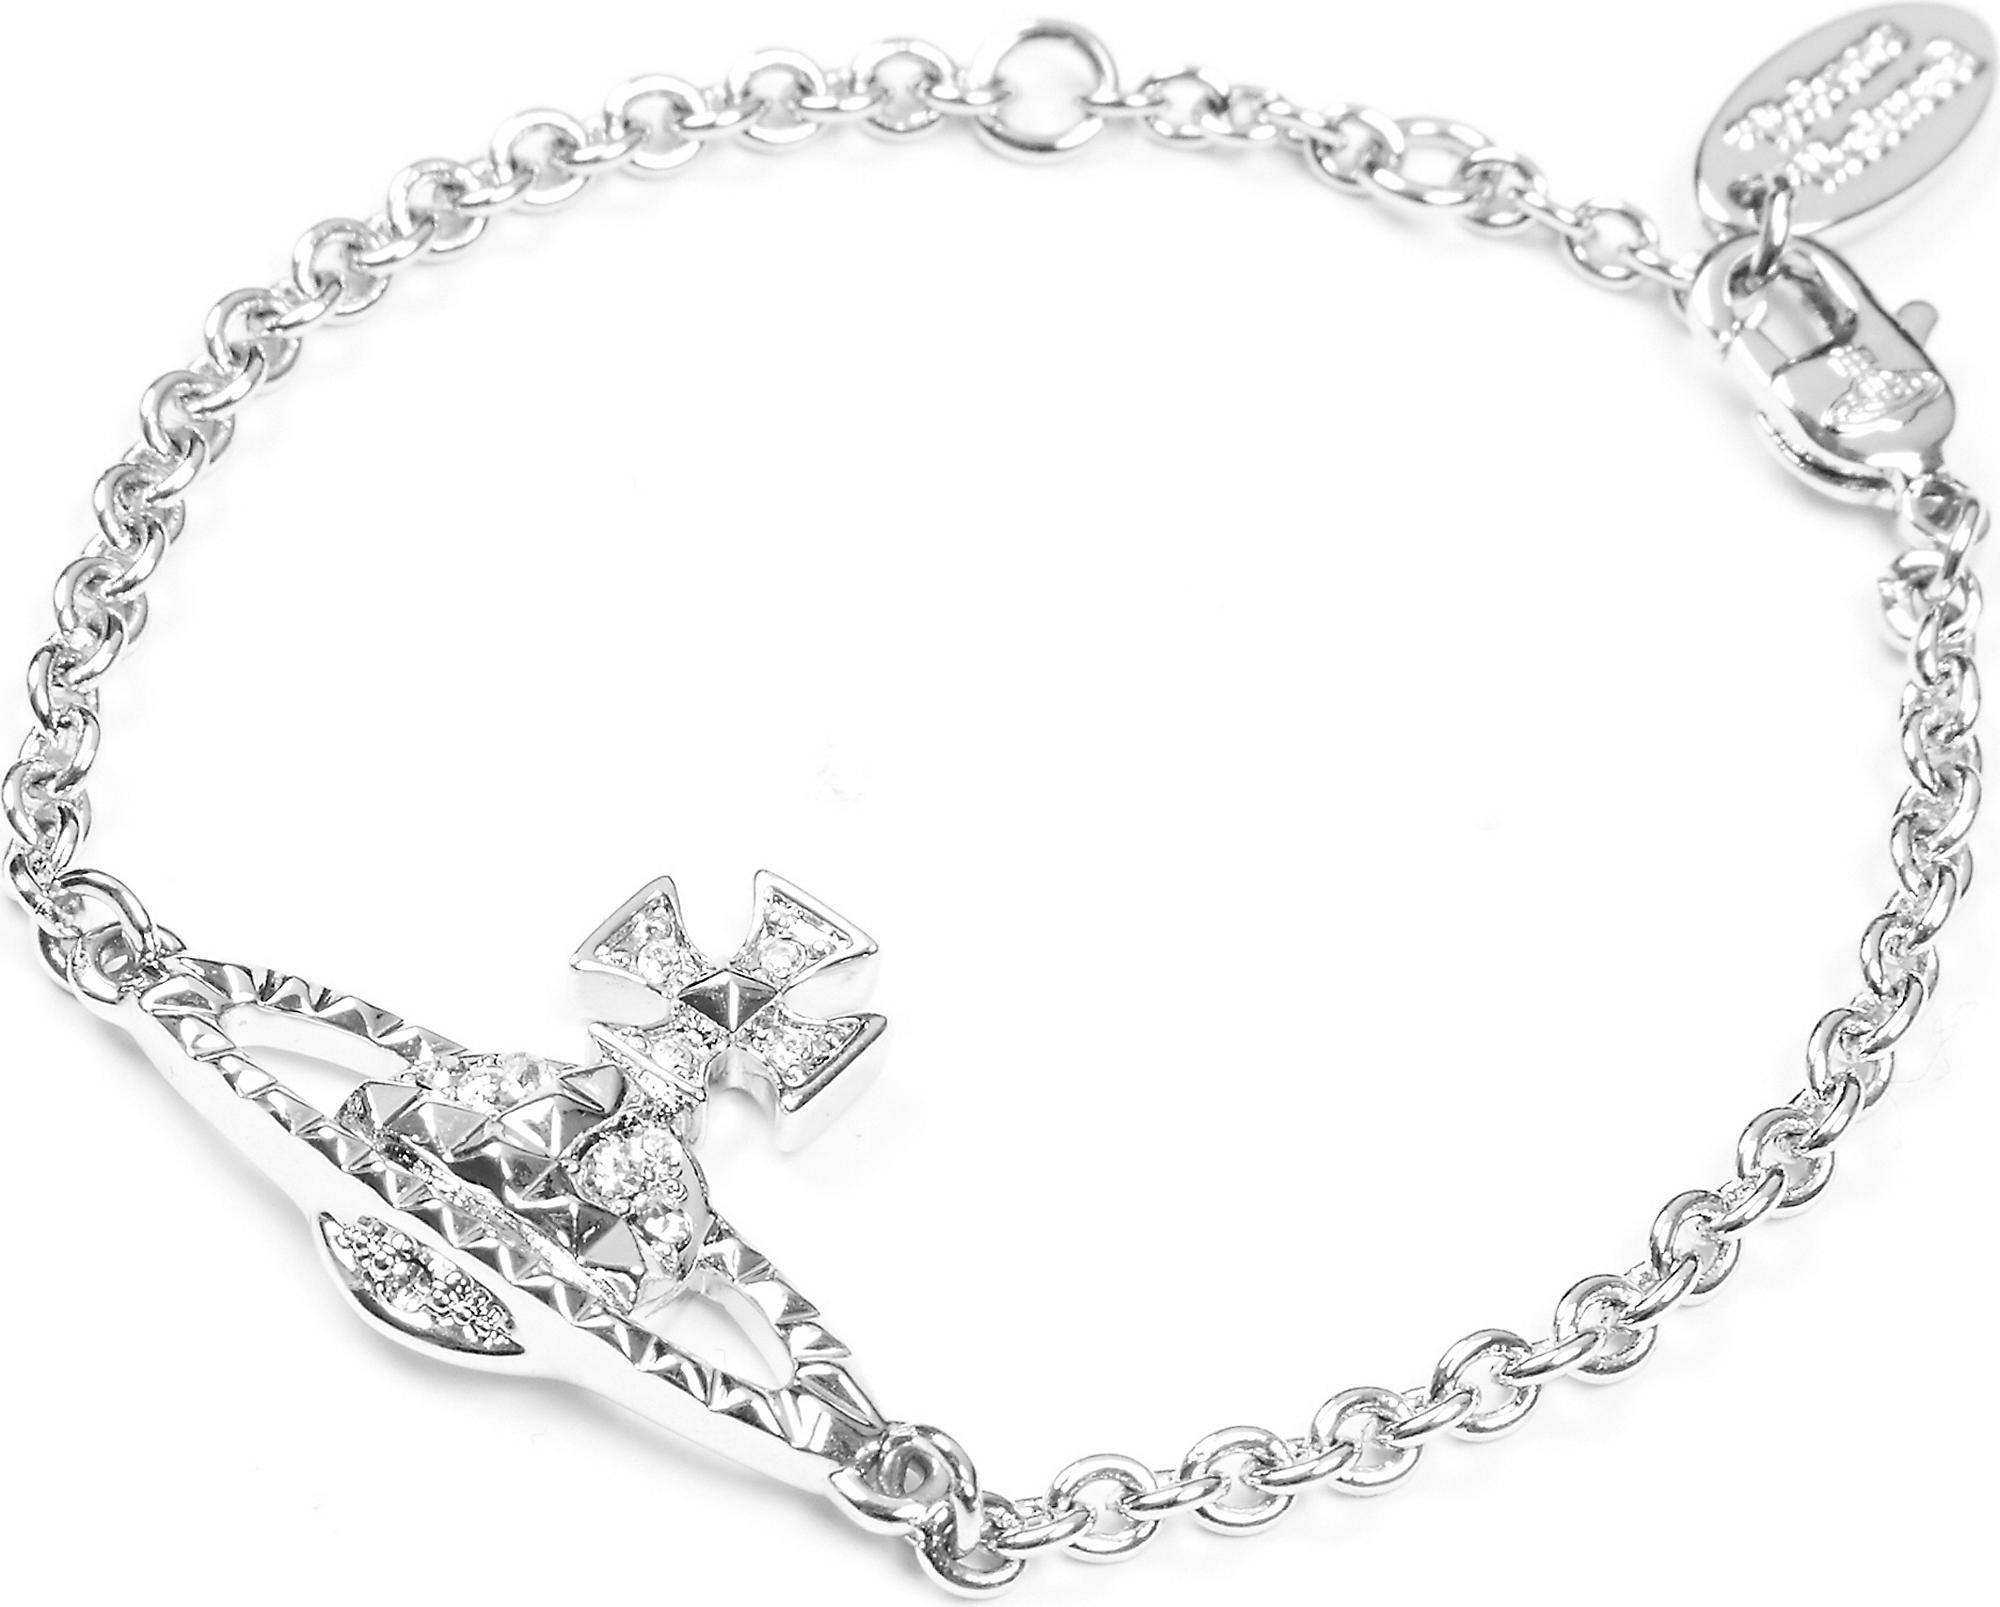 Vivienne Westwood Mayfair Bas Relief Bracelet in Crystal/Rhodium